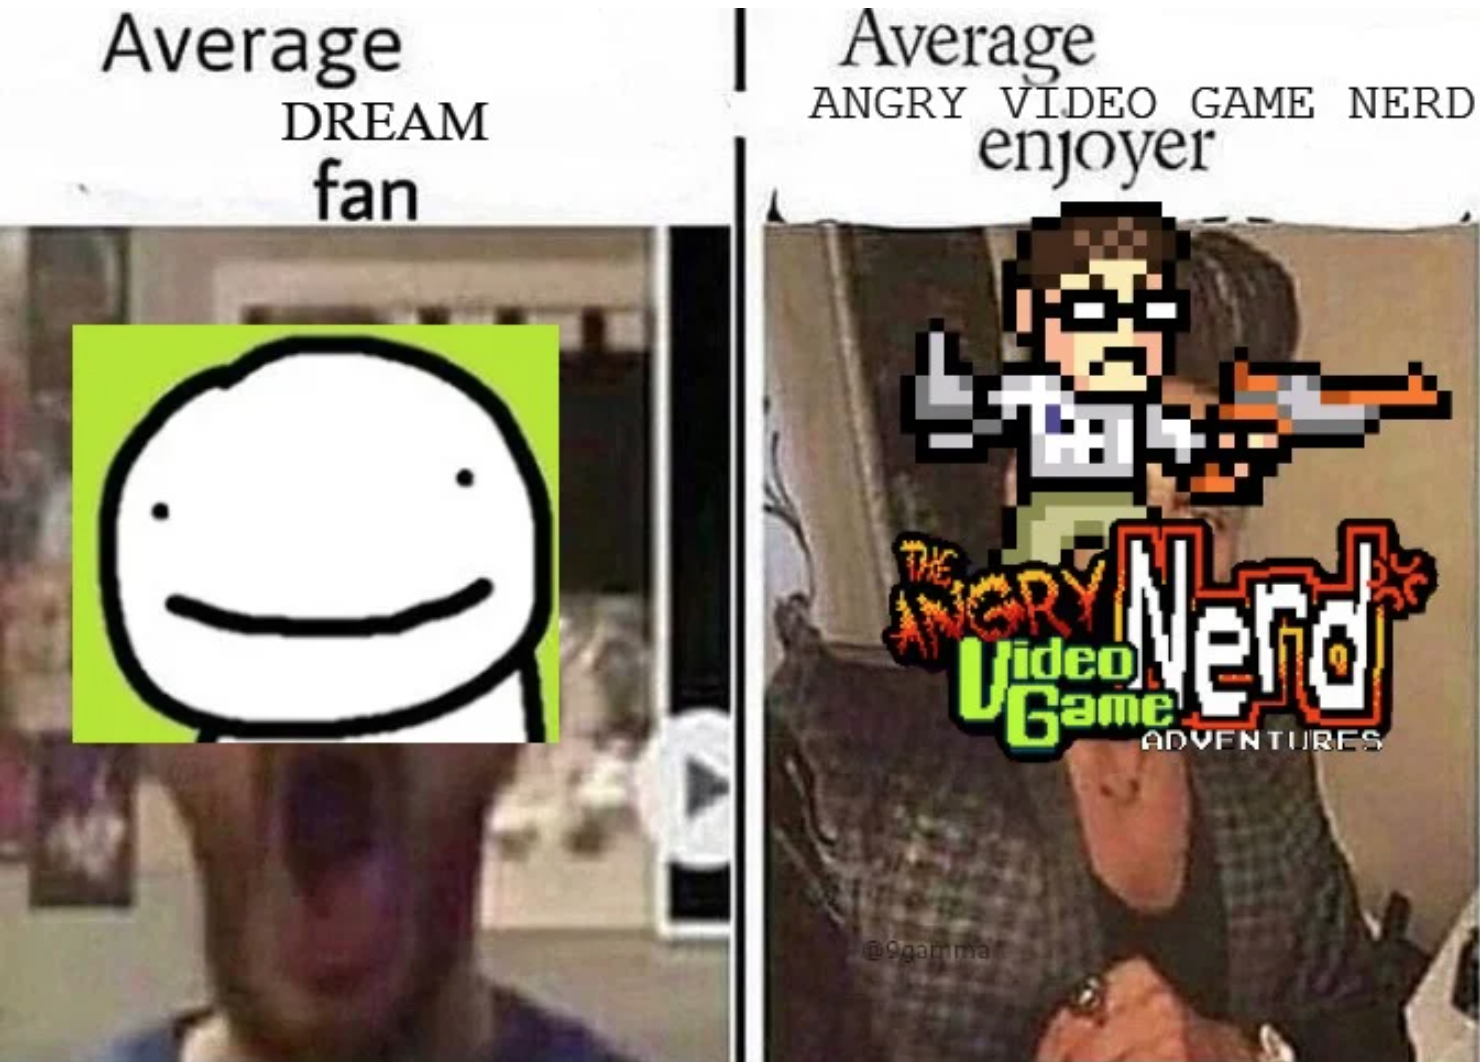 average fan vs average enjoyer - Average Dream fan | Average Angry Video Game Nerd enjoyer Te Angry Video Game Nerd Adventures